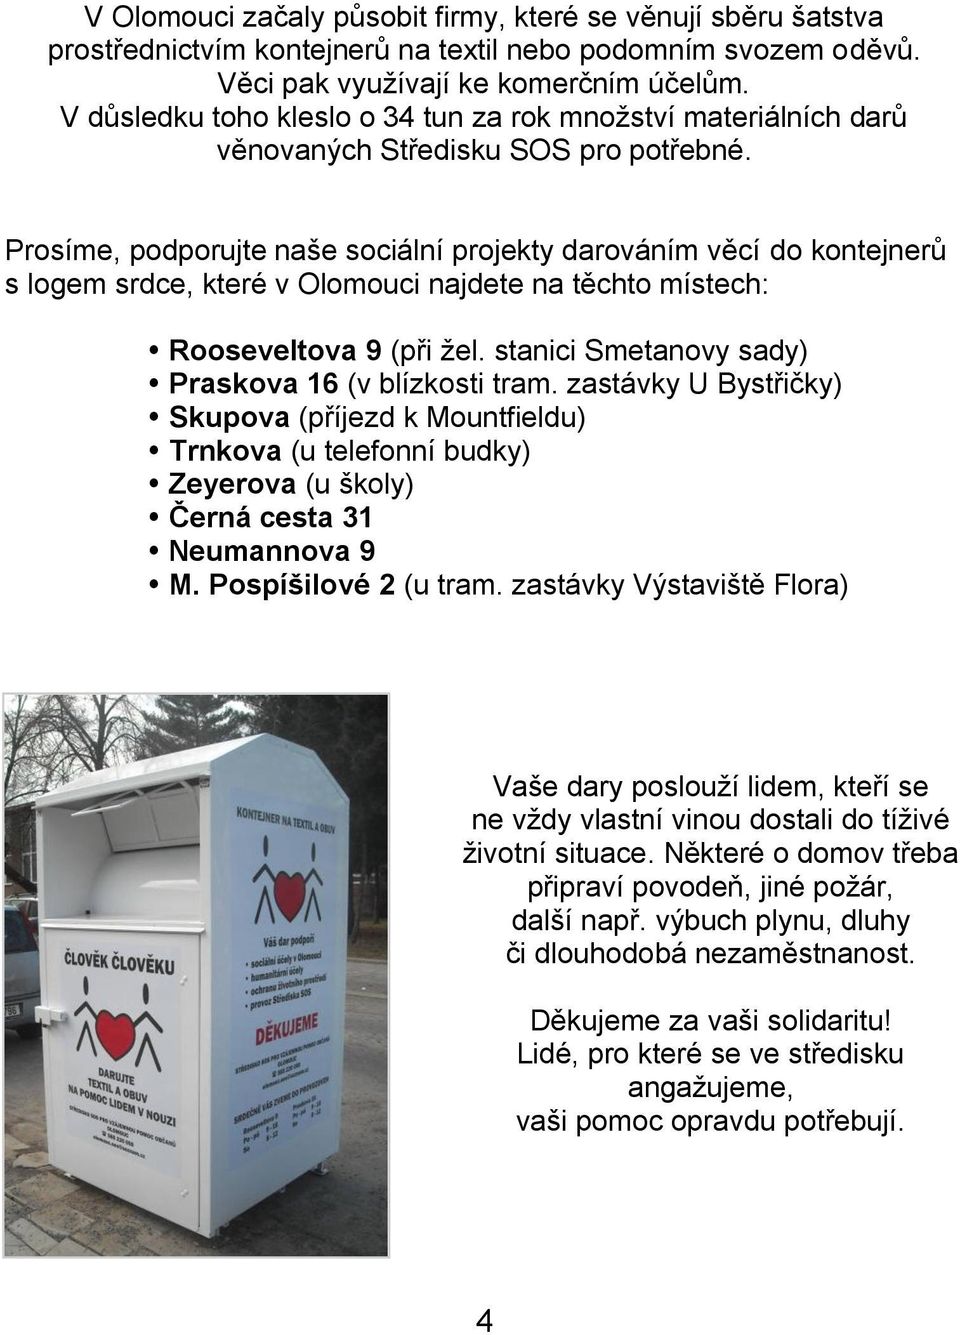 Prosíme, podporujte naše sociální projekty darováním věcí do kontejnerů s logem srdce, které v Olomouci najdete na těchto místech: Rooseveltova 9 (při ţel.